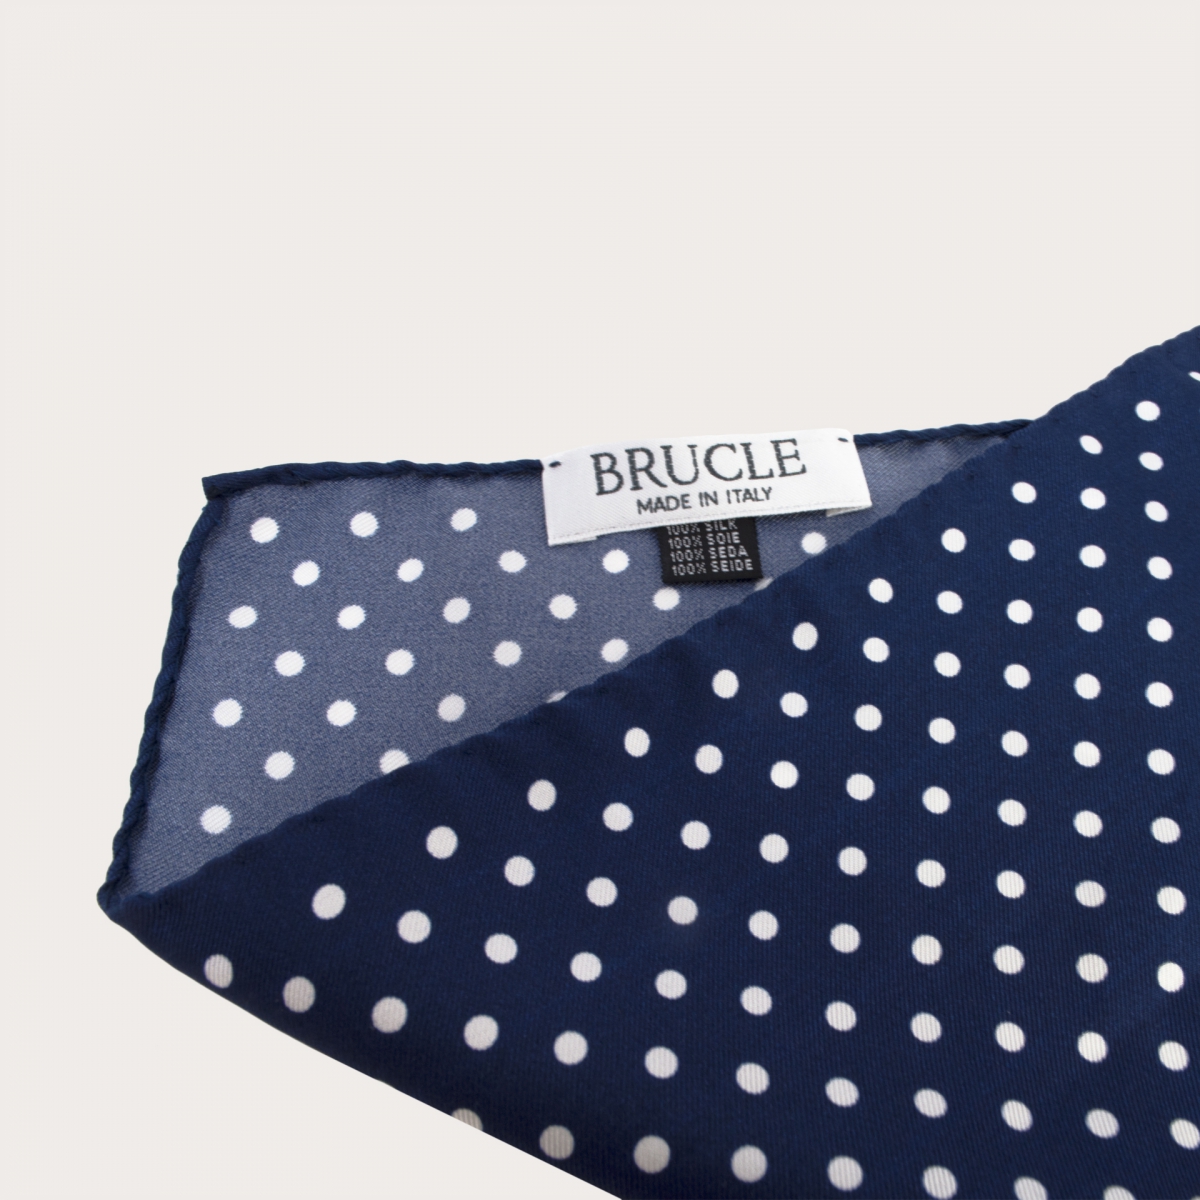 Elegant men's pocket square in jacquard silk, blue with white polka dots